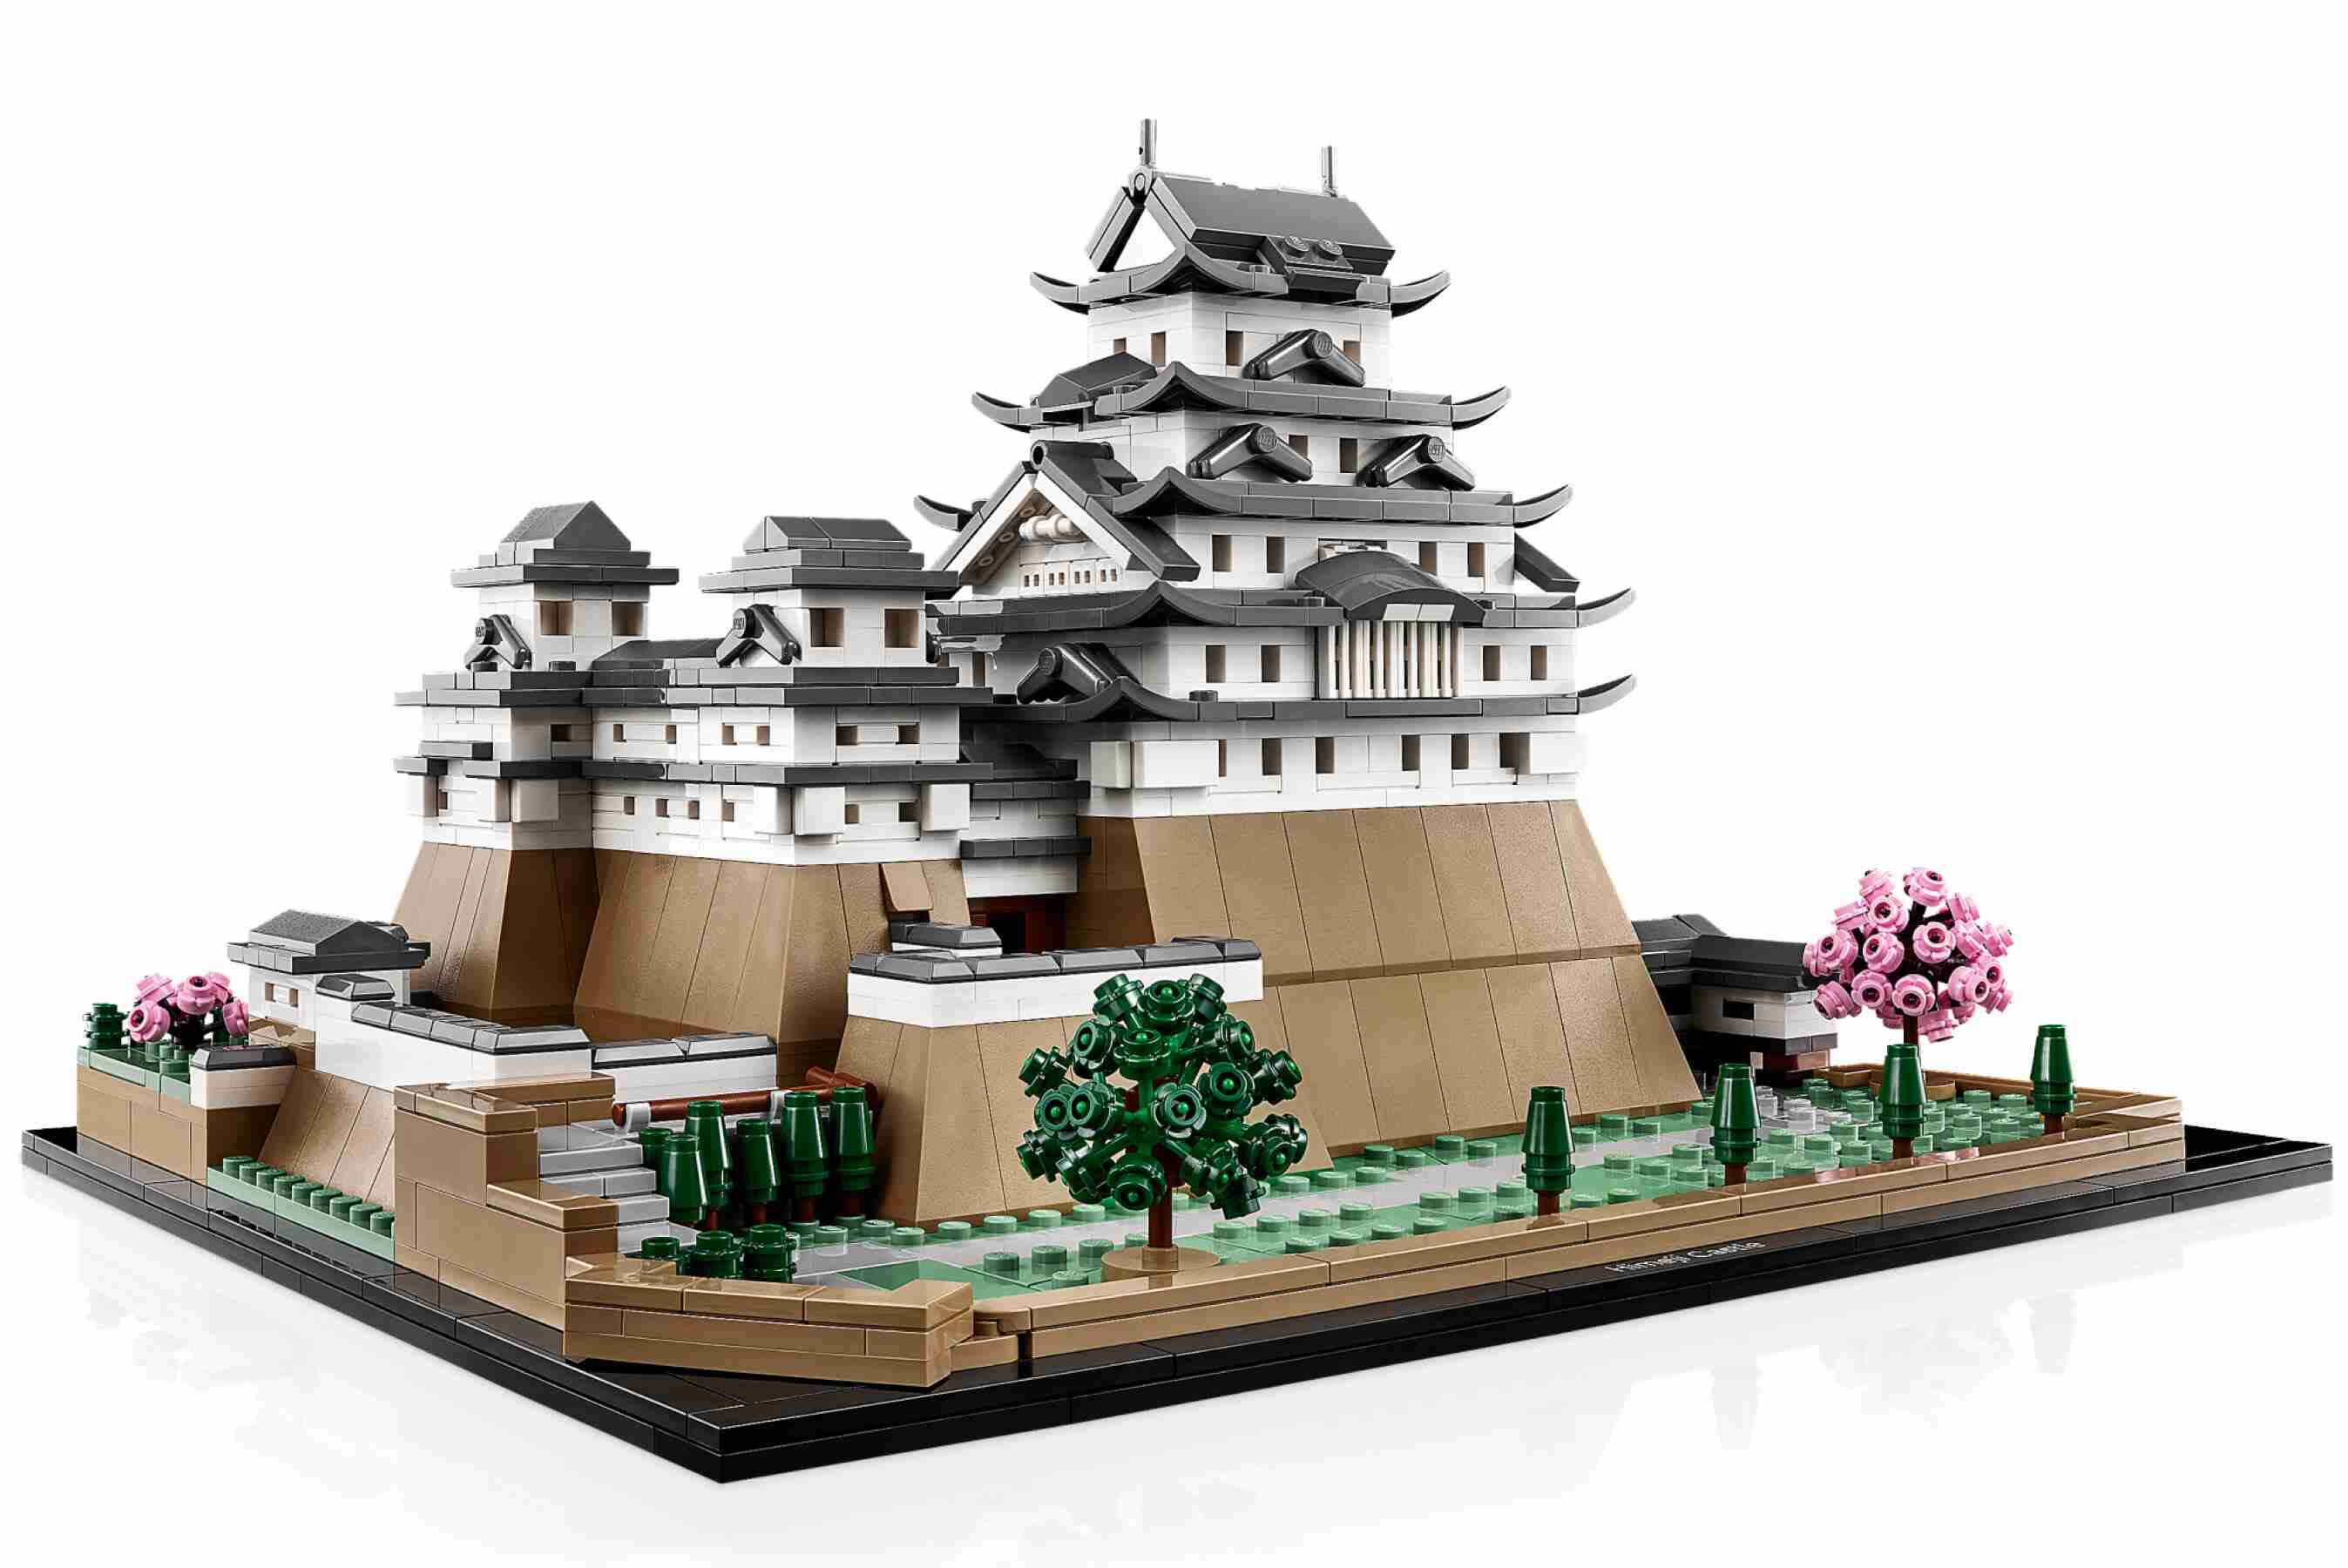 LEGO 21060 Architecture Burg Himeji, authentische Details